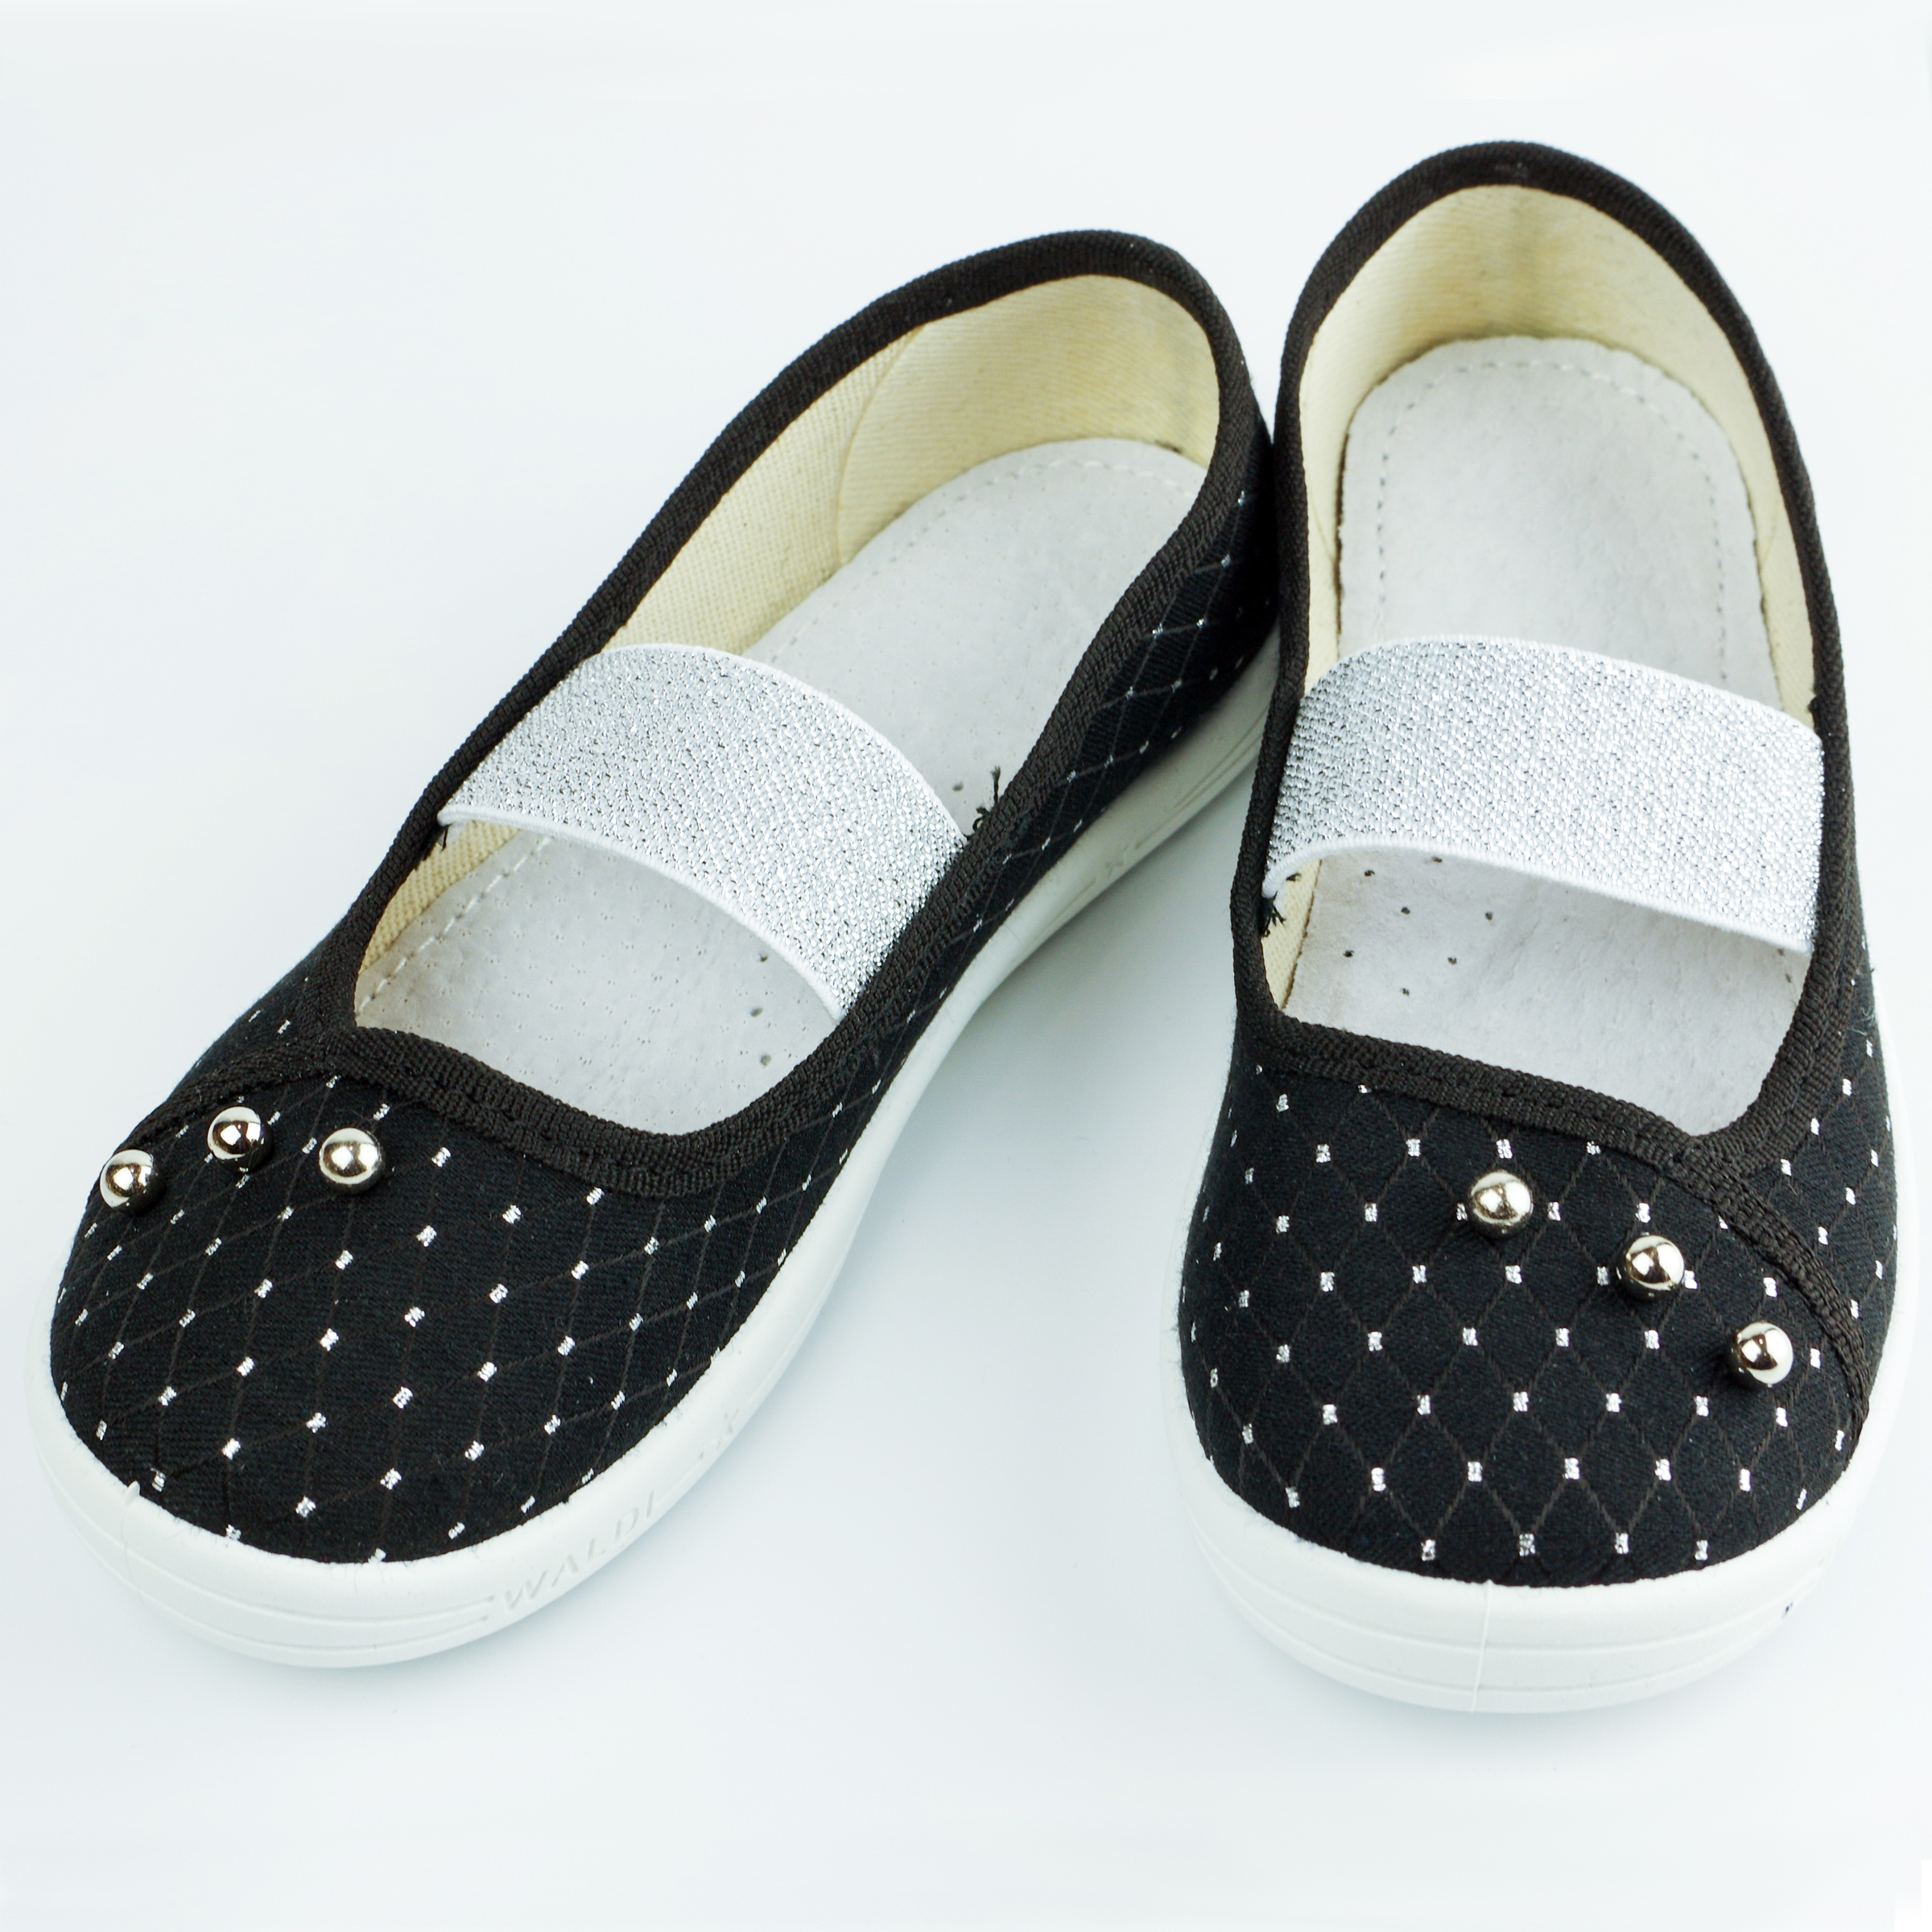 Текстильная обувь для девочек Тапочки Жемчужина (2129) цвет Черный 27-34 размеры – Sole Kids. Фото 4